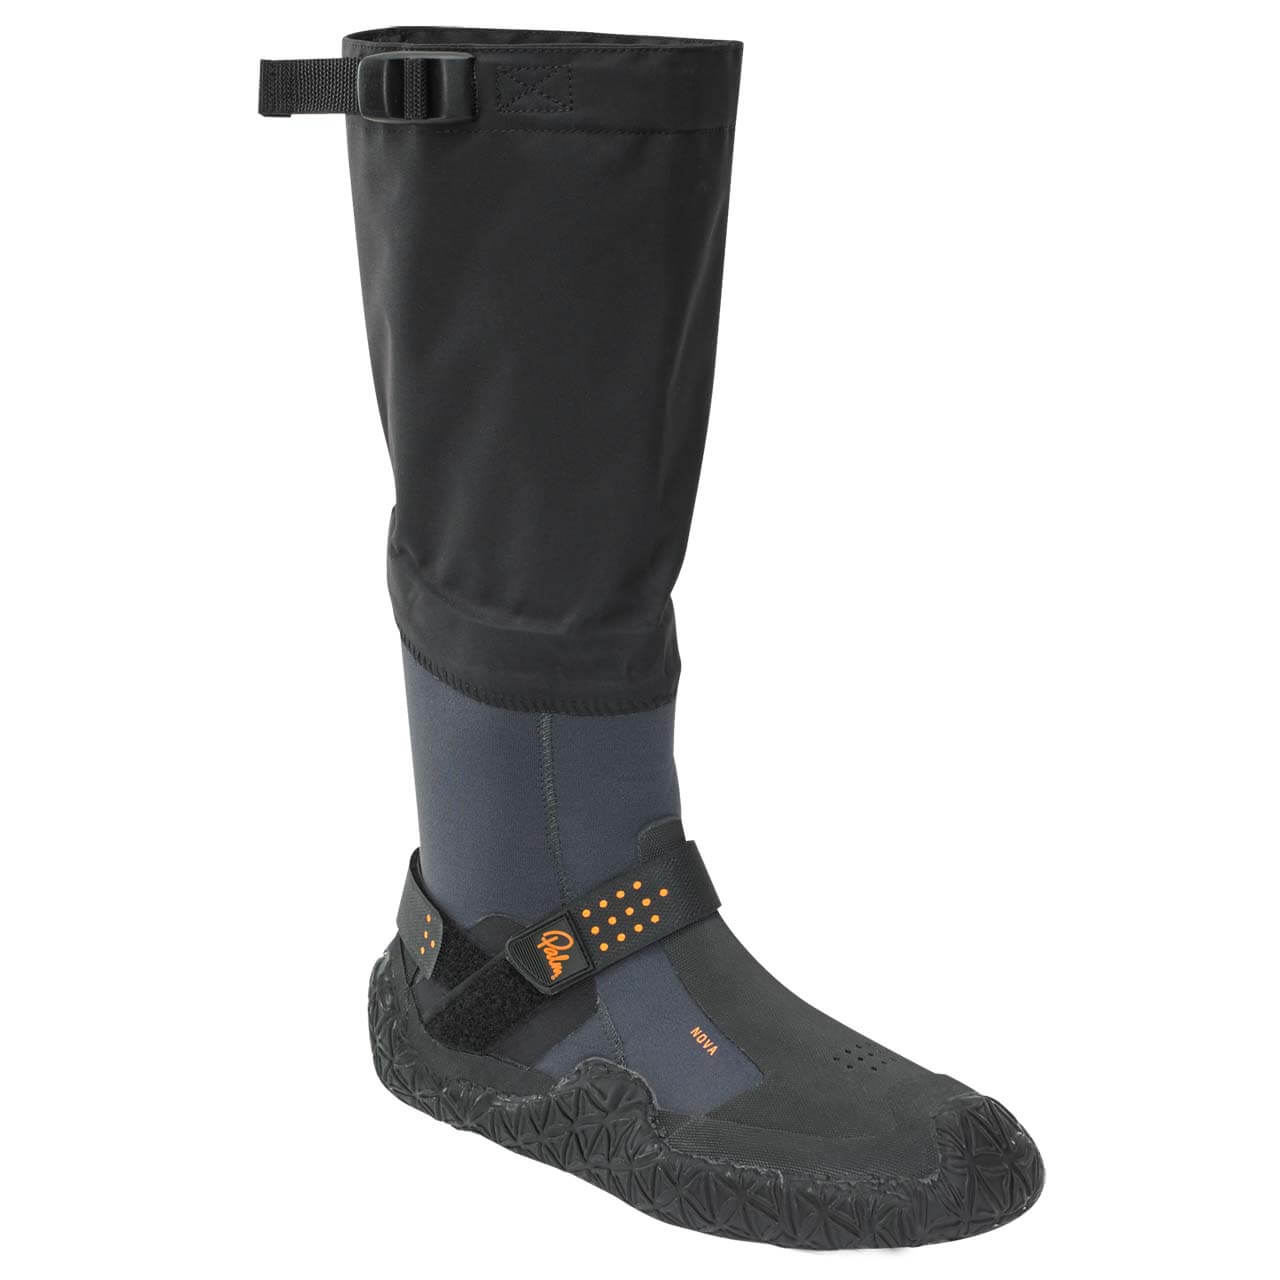 Palm Nova Boots - Jet Grey, UK 8